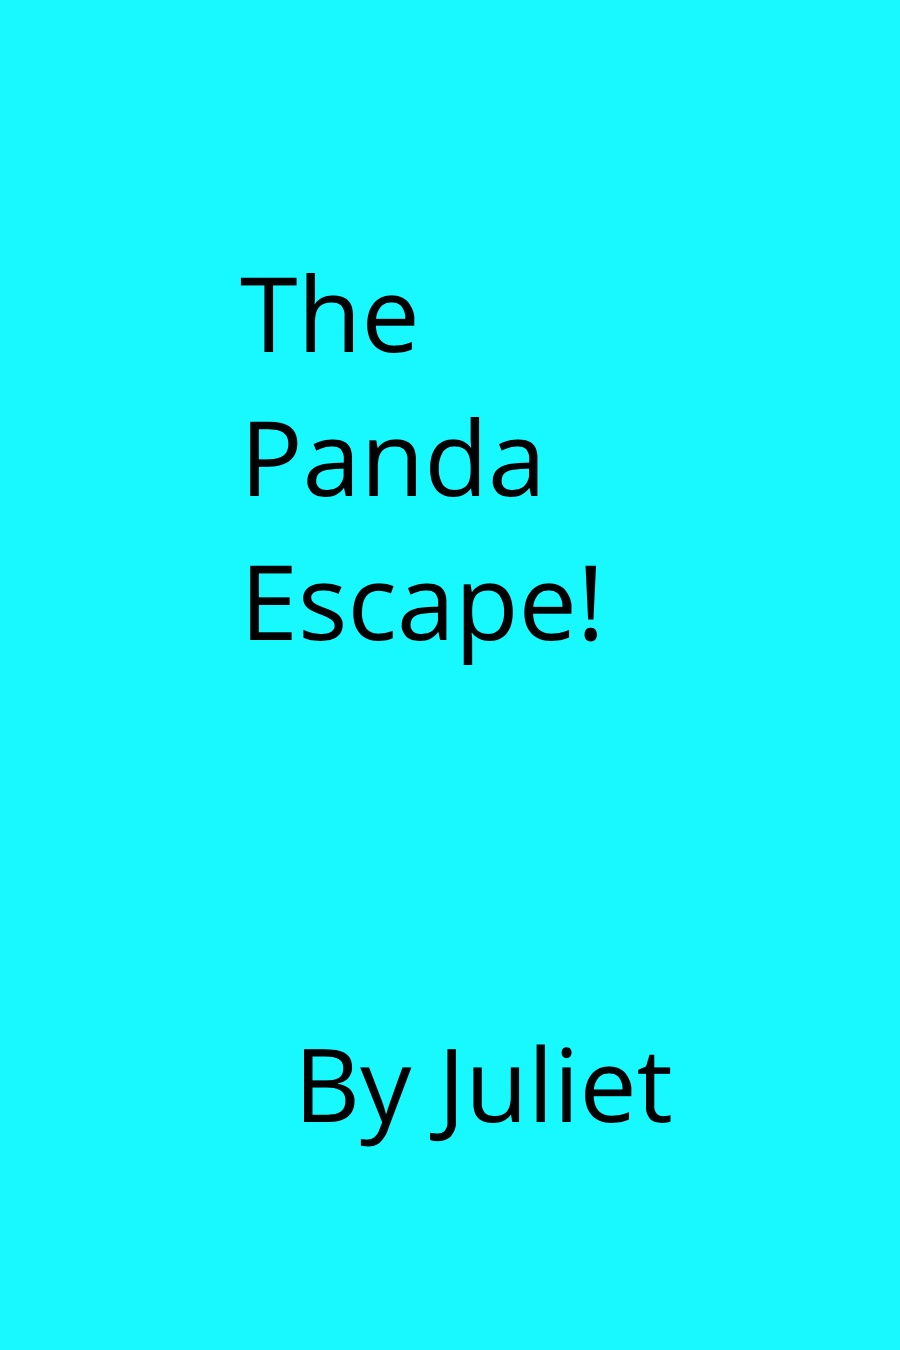 The Panda Escape By Juliet L